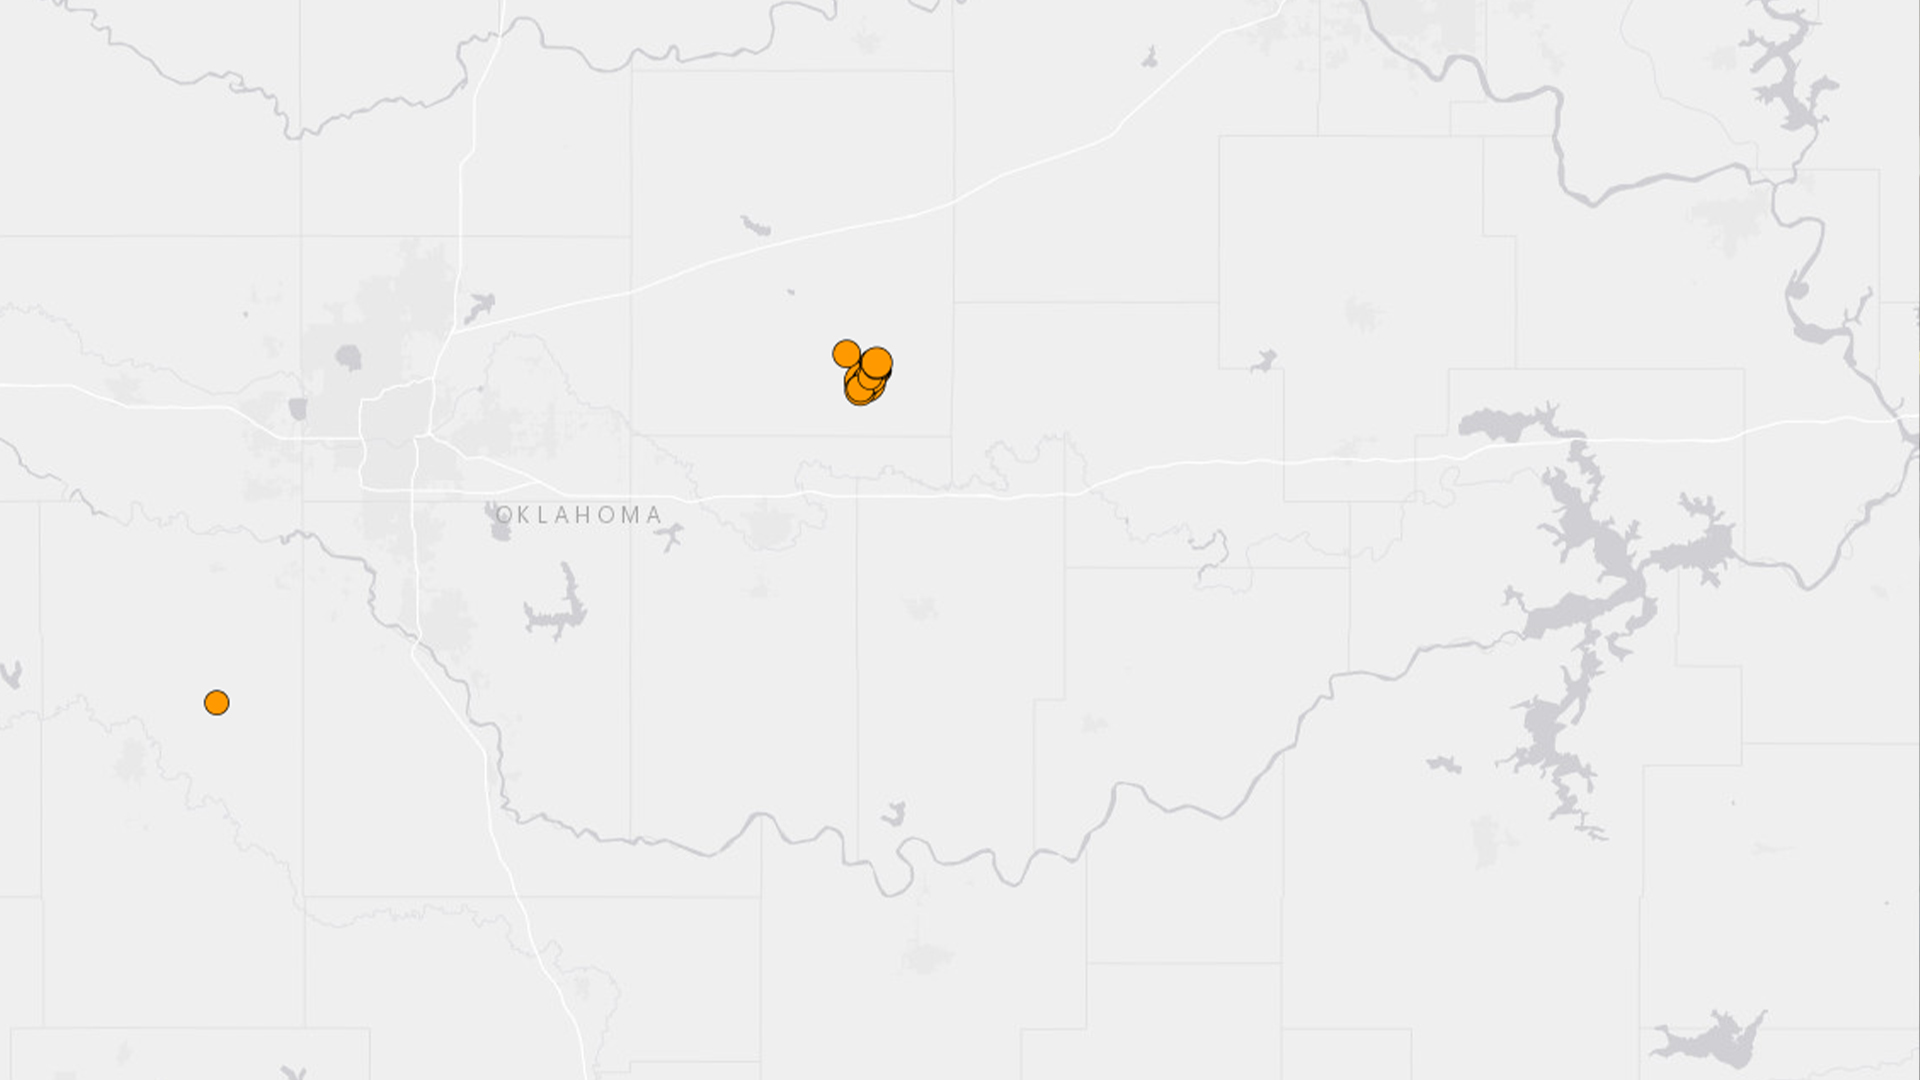 Un tremblement de terre de magnitude 5,1 a secoué une région près d’Oklahoma City tard vendredi soir, aux États-Unis. Il était suivi de petites répliques dans les heures suivantes, a rapporté le U.S. Geological Survey (USGS).